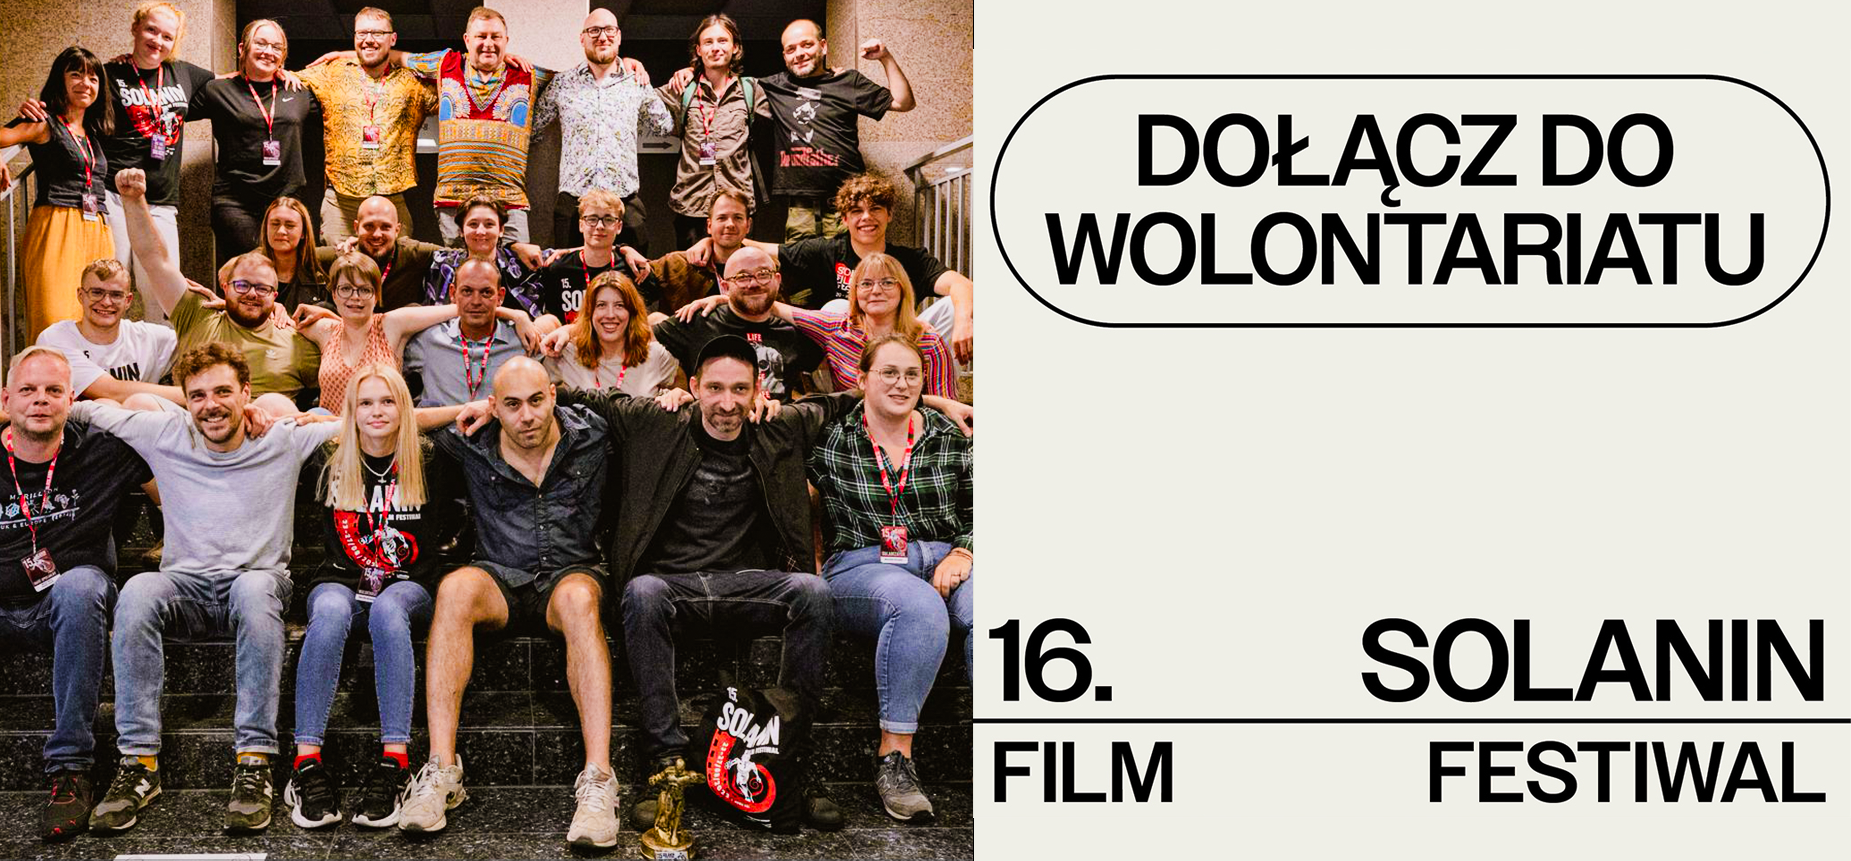 Ekipa 15. Solanin Film Festiwal – Dołącz do wolontariatu 16. Solanina!